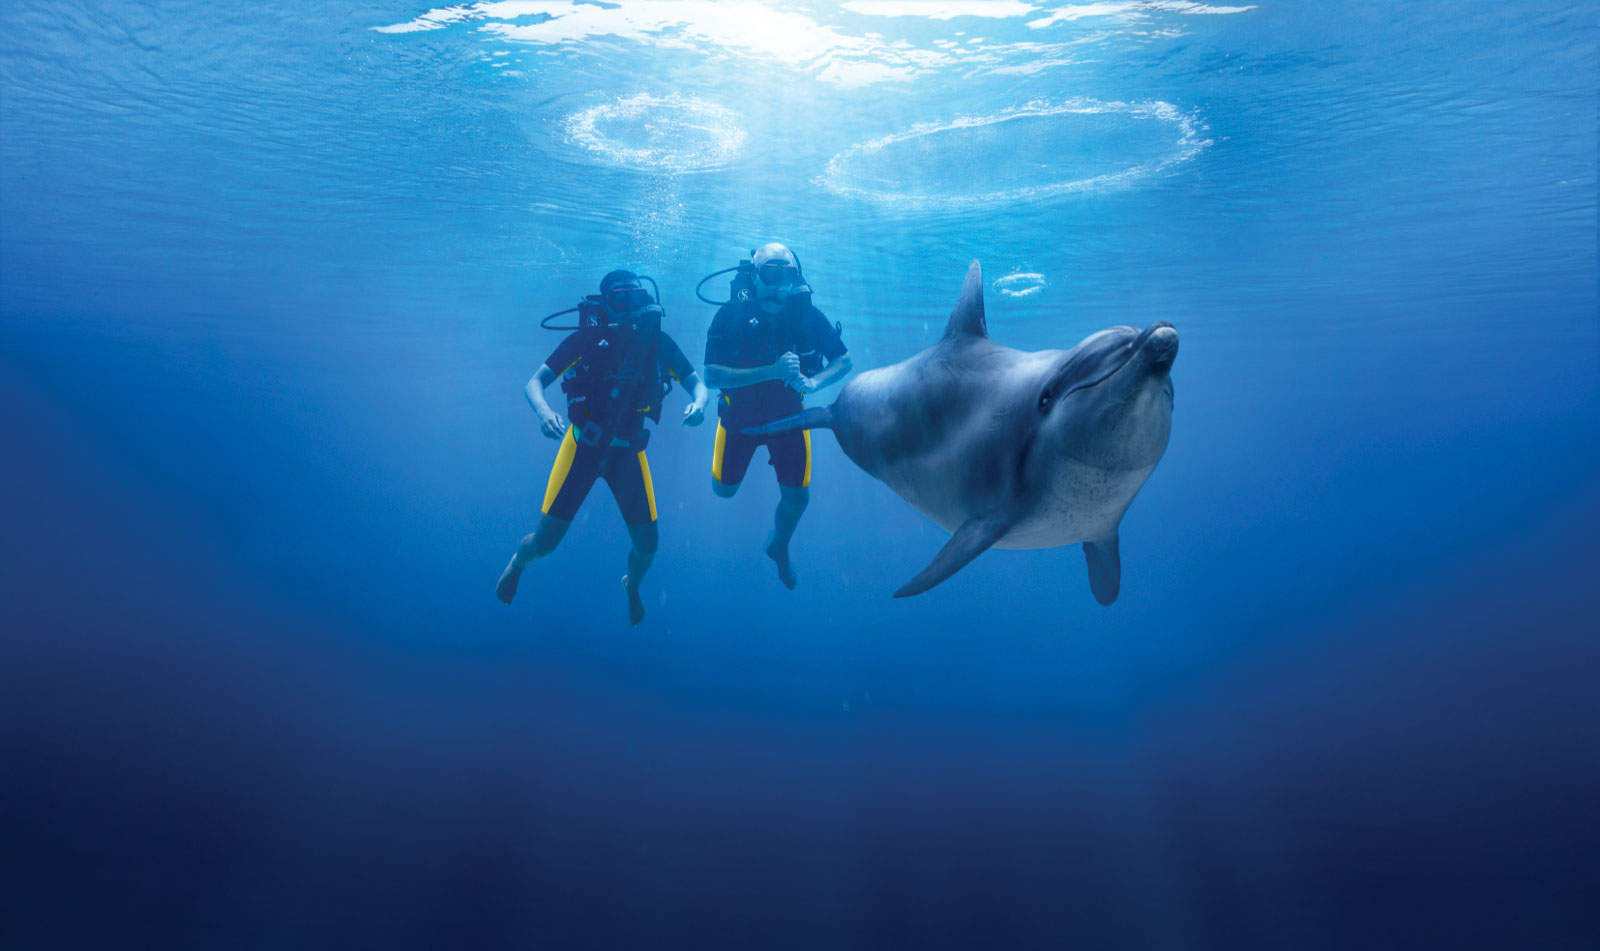 الغوص مع الدلافين في دبي سياحة يعد من اجمل الانشطة السياحية في دبي - مناظر دبي